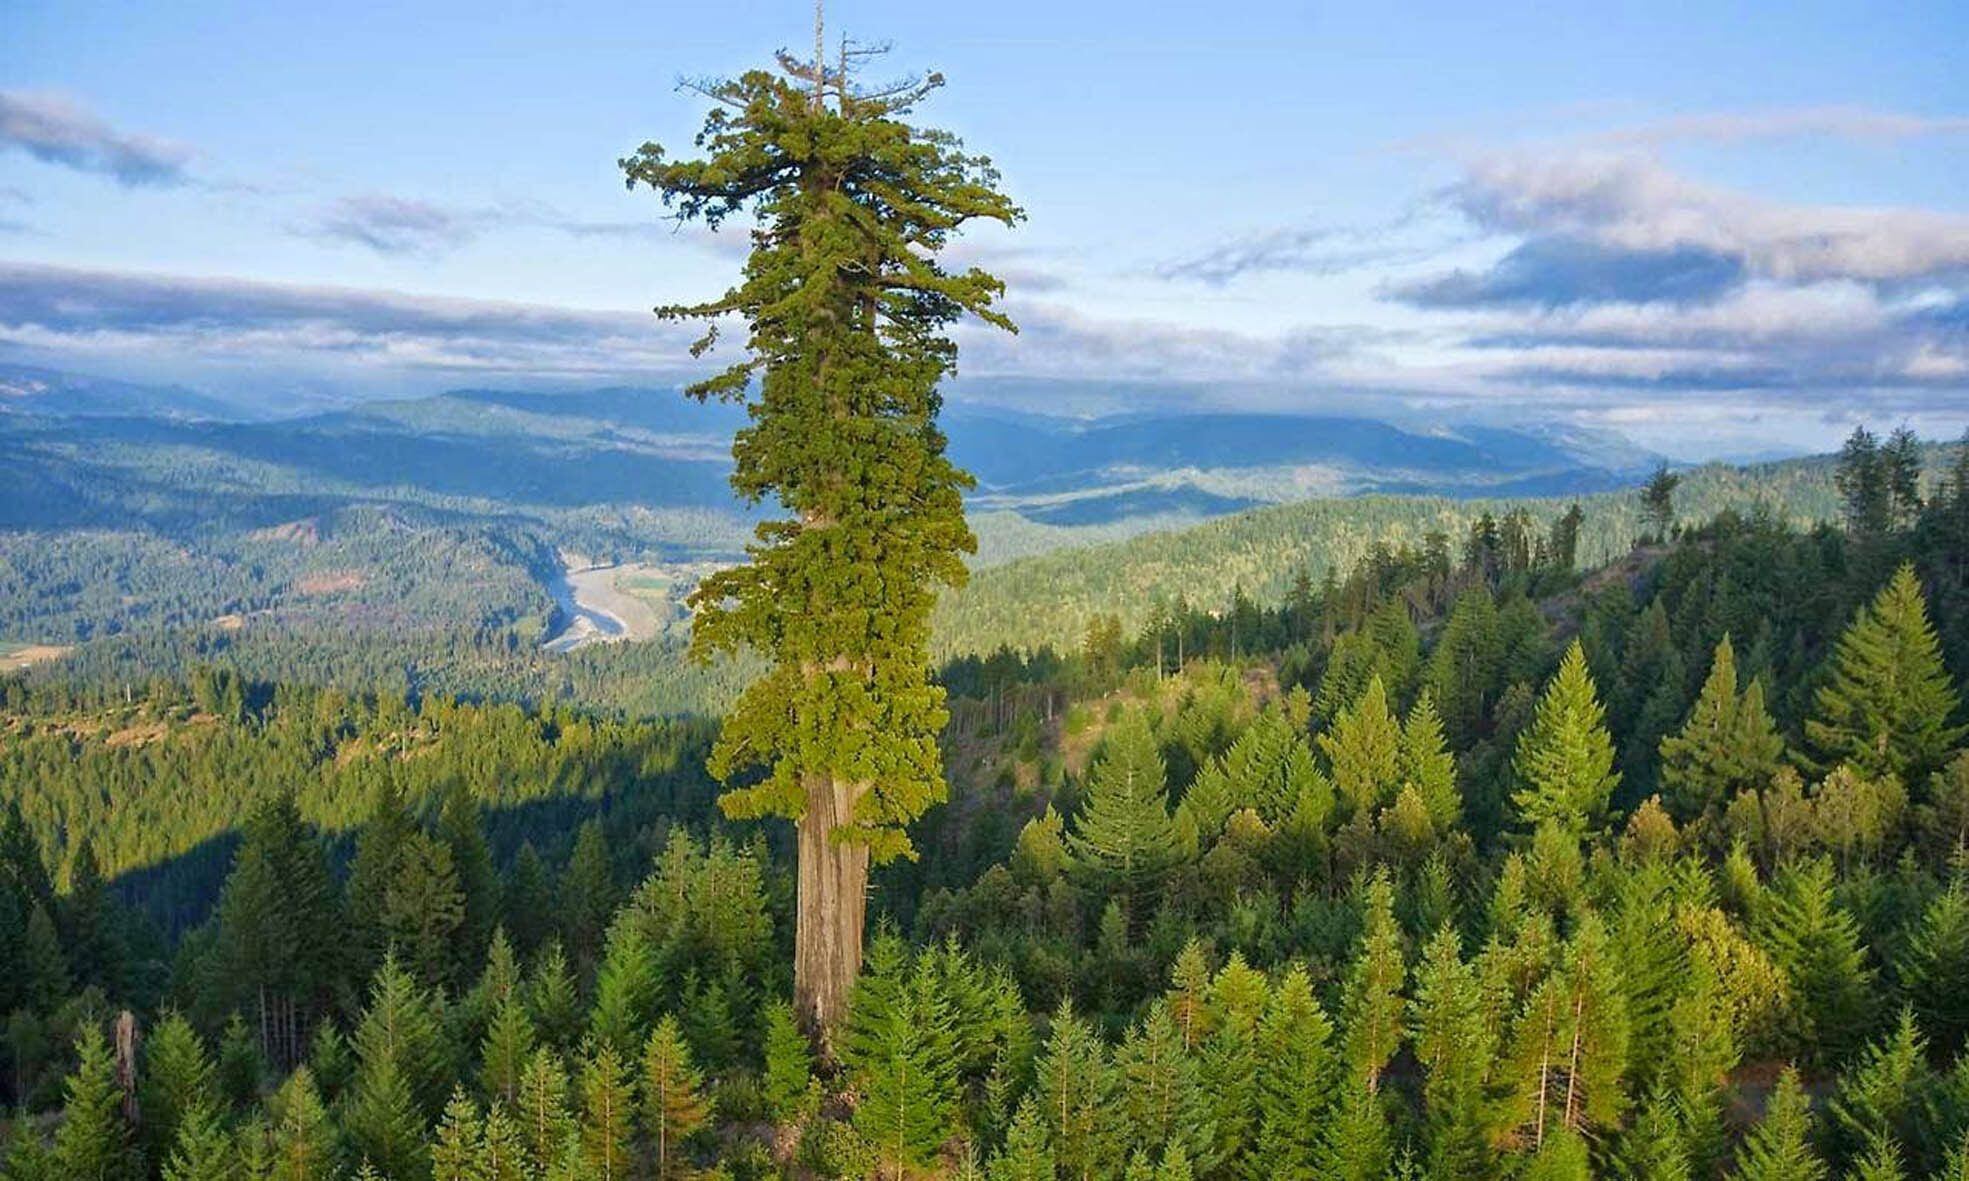 Hyperion, la secuoya del Parque Natural de Redwood (California), con sus 115 metros, es el árbol de mayor altura del planeta.